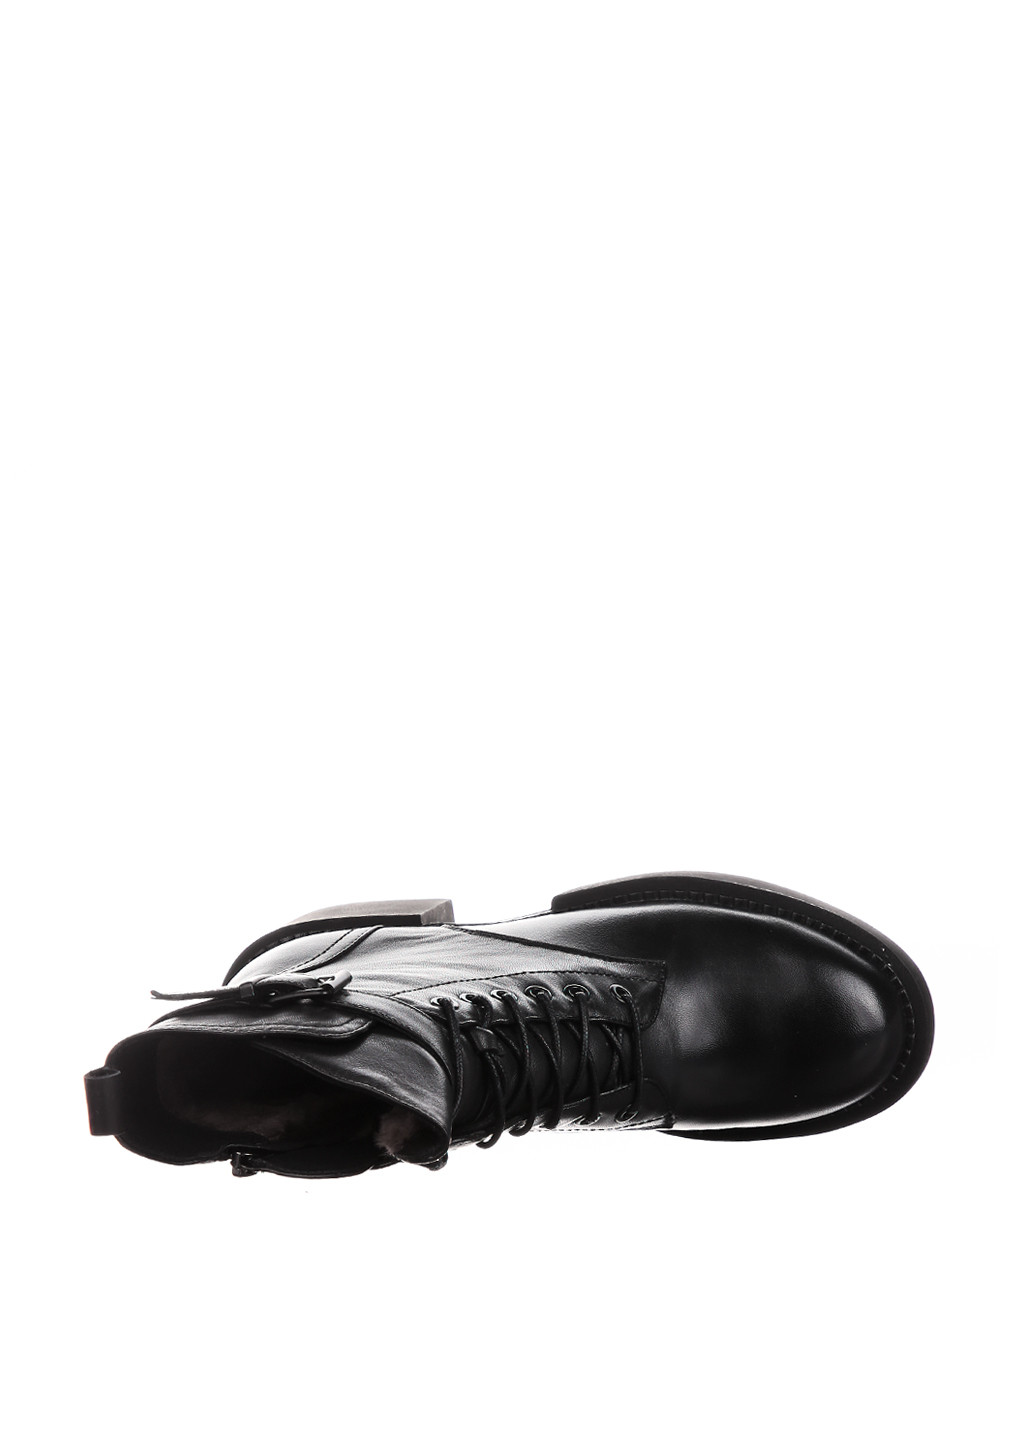 Зимние ботинки берцы Blizzarini с пряжкой, со шнуровкой